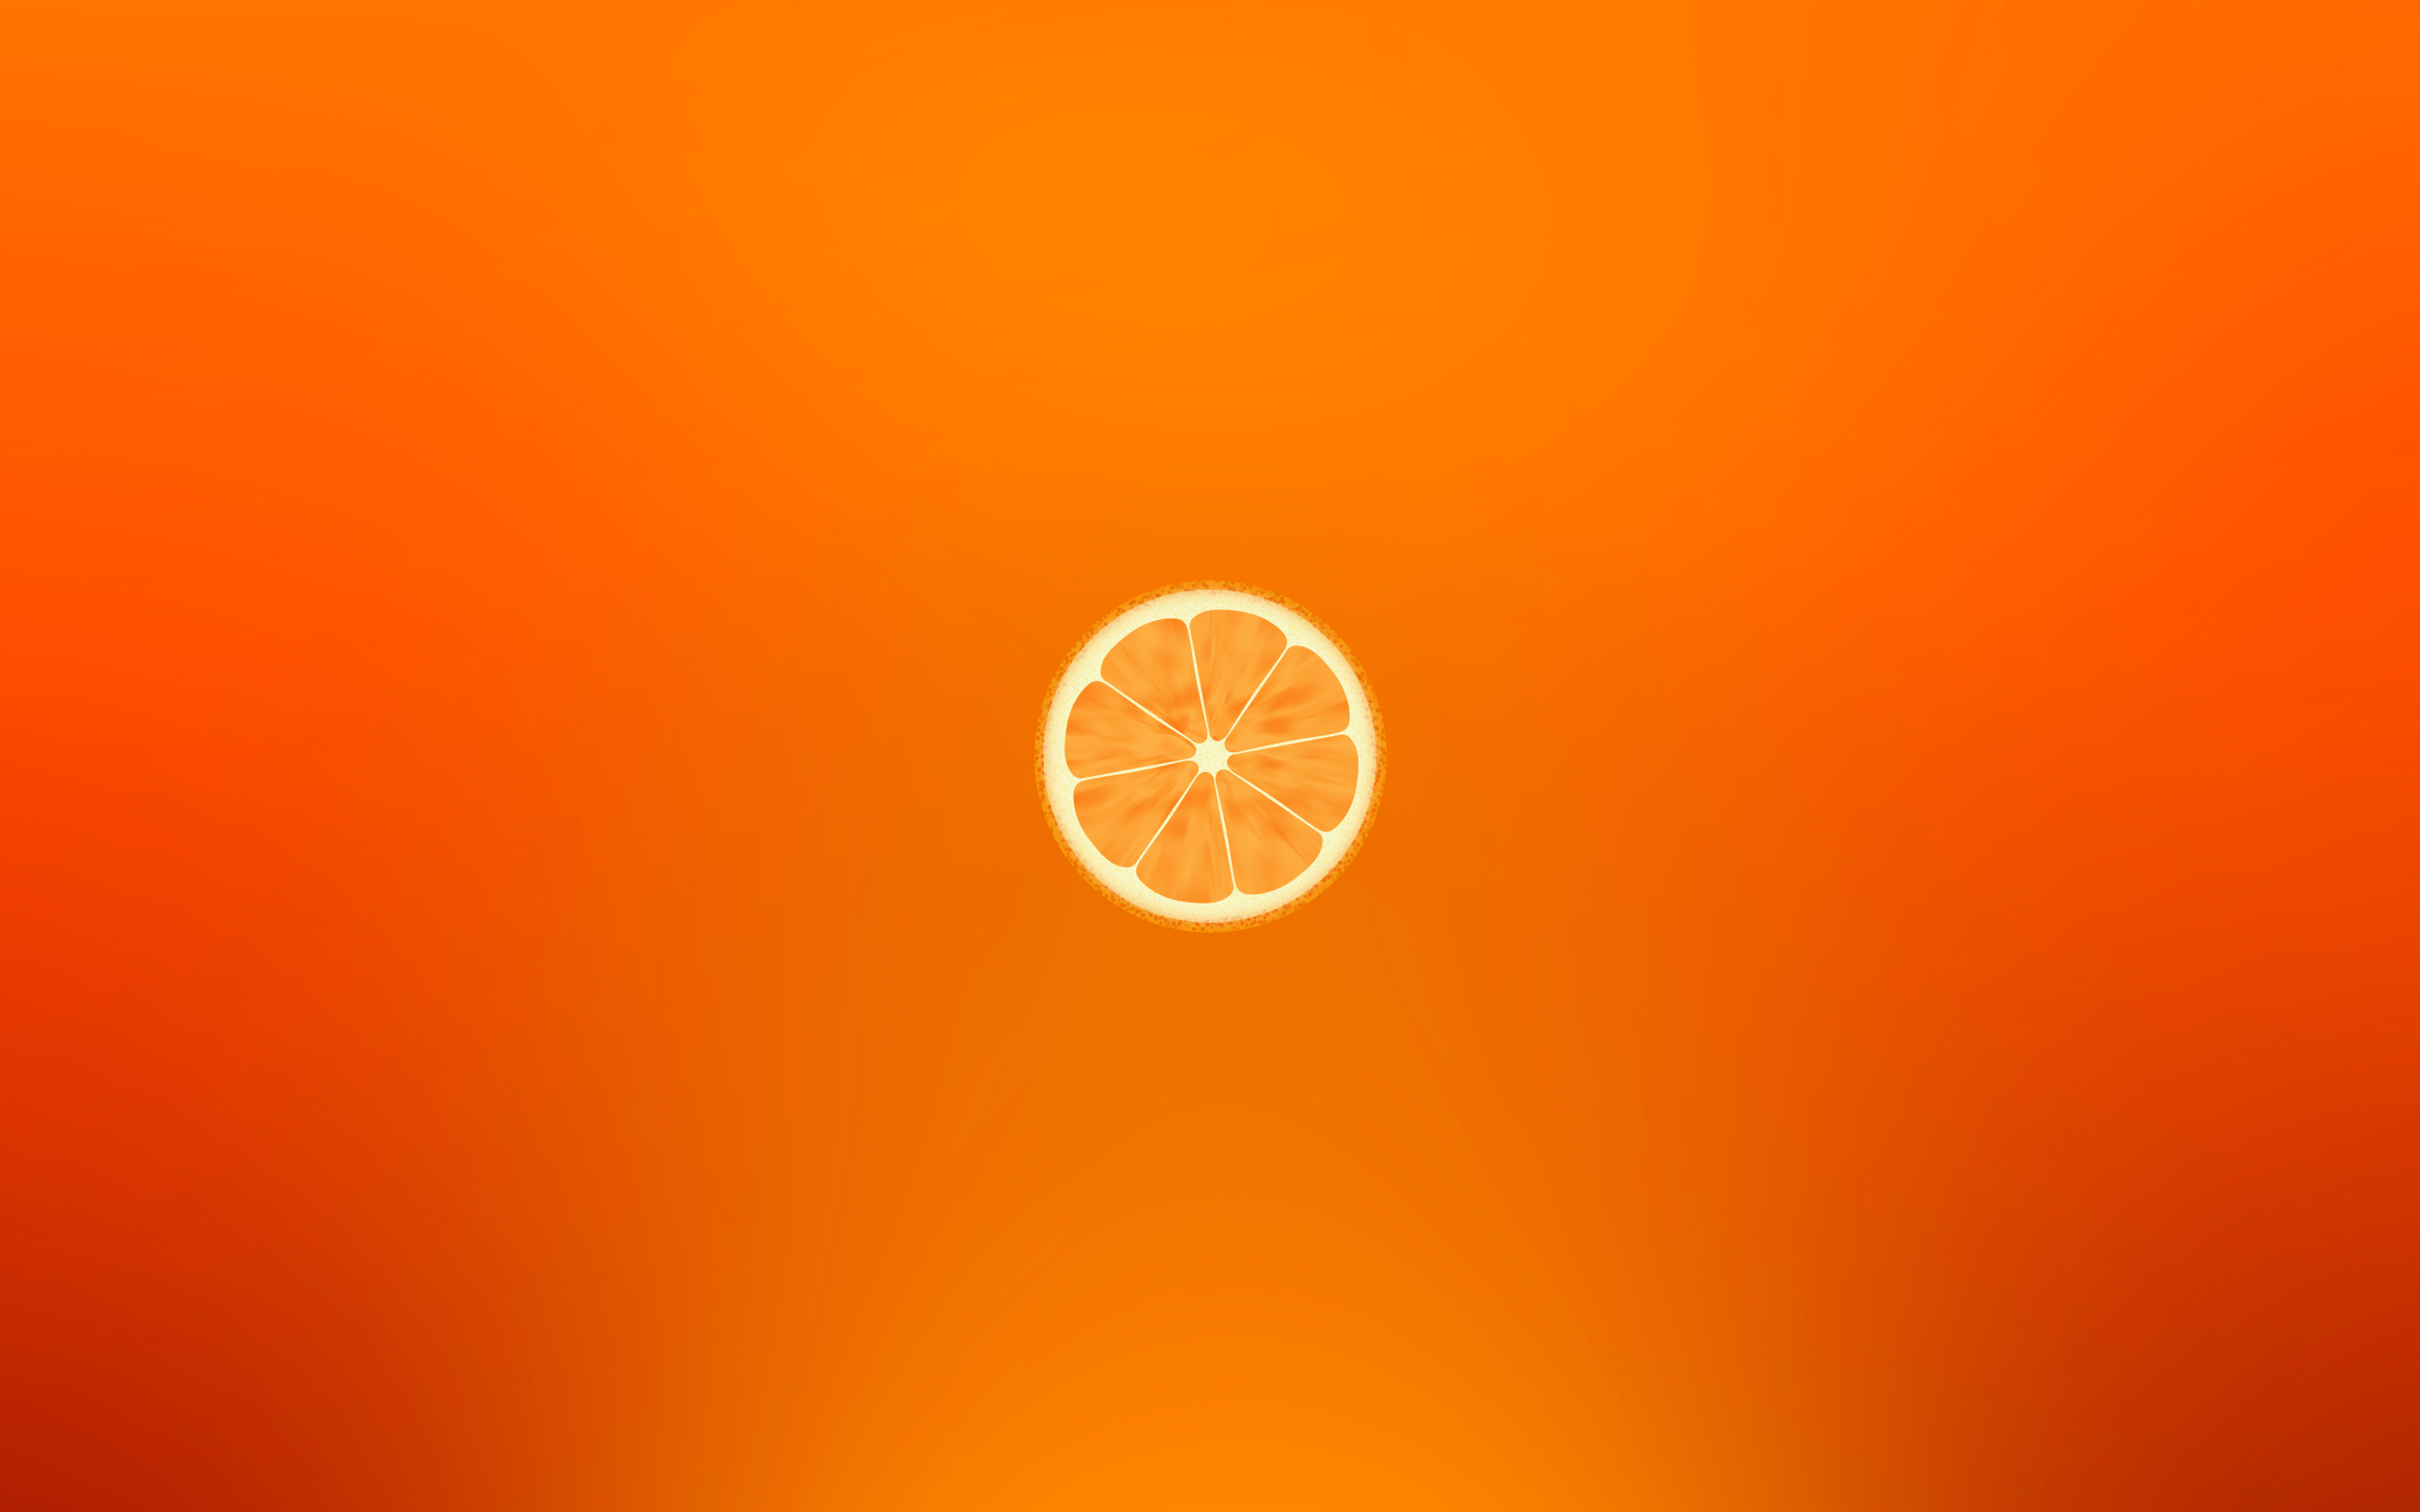 апельсин, оранжевый фон, минимализм, прекрасные обои, заставки для рабочего стола, orange, orange background, minimalism, beautiful wallpapers for your desktop